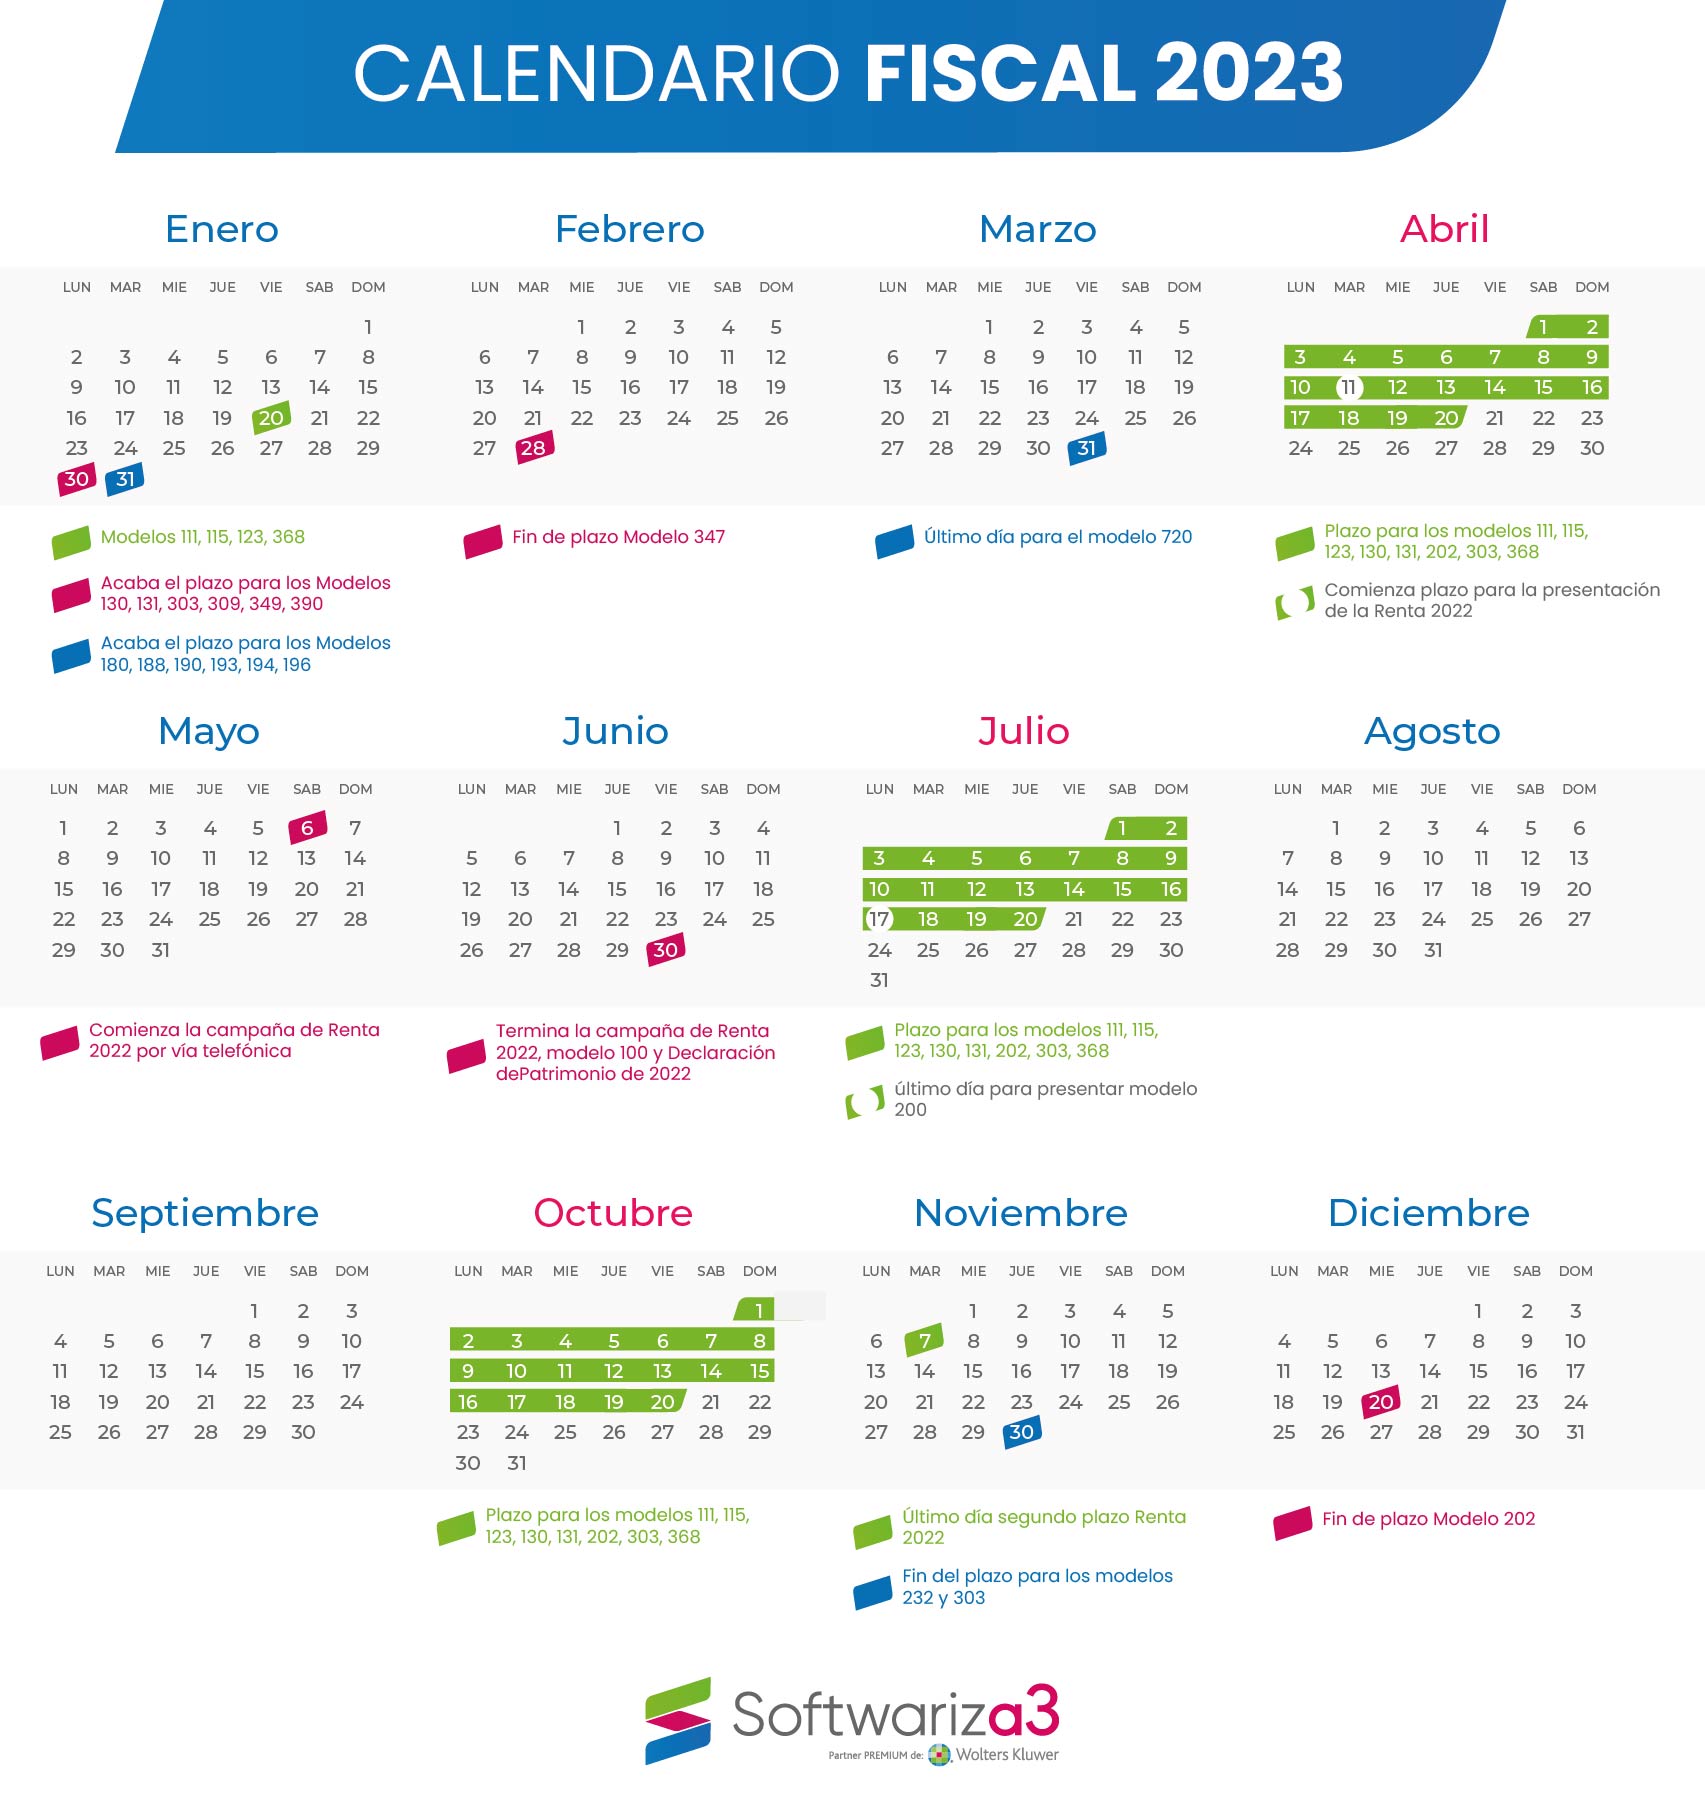 Calendario Fiscal 2023 Softwariza3